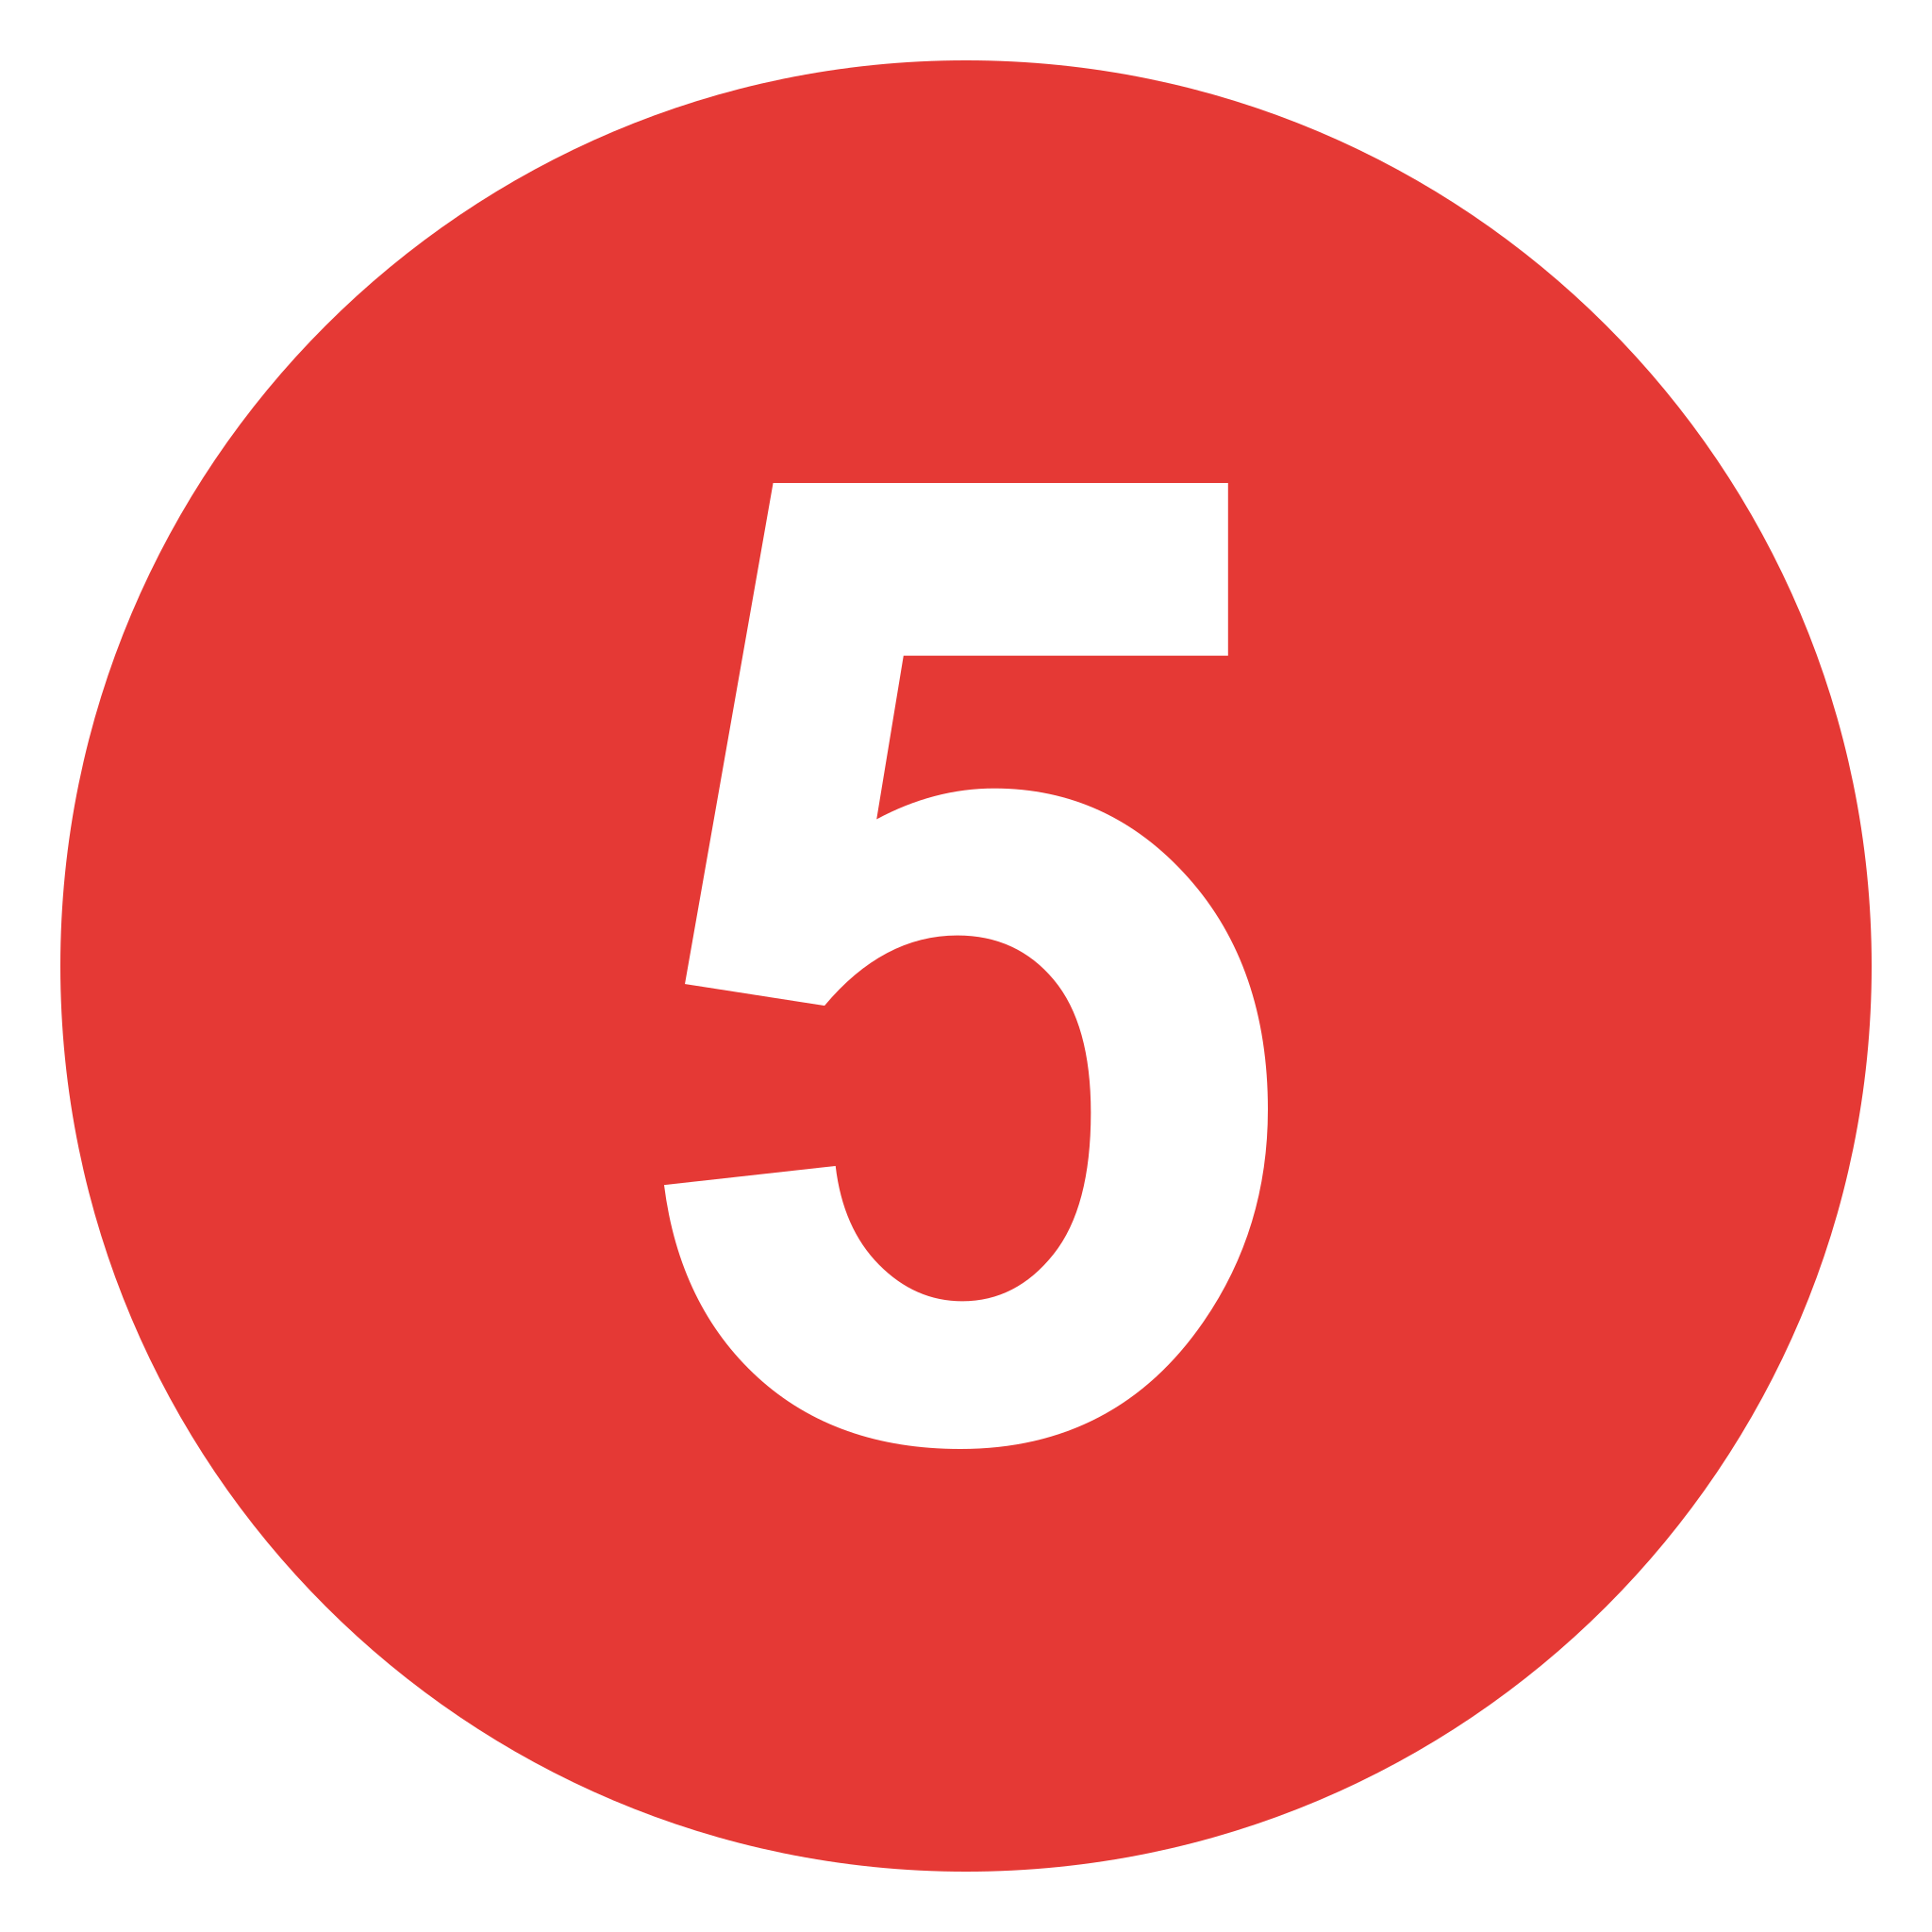 Hình tròn số 5 màu đỏ trên Wikimedia Commons: Hình tròn số 5 màu đỏ trên Wikimedia Commons thể hiện sự may mắn và thành công. Với thiết kế đơn giản và tinh tế, hình tròn số 5 được sử dụng rộng rãi trên các nền tảng trực tuyến và được yêu thích bởi người dùng. Hãy cùng chúng tôi tìm hiểu thêm về những ý nghĩa đằng sau hình tròn số 5 màu đỏ trên Wikimedia Commons.